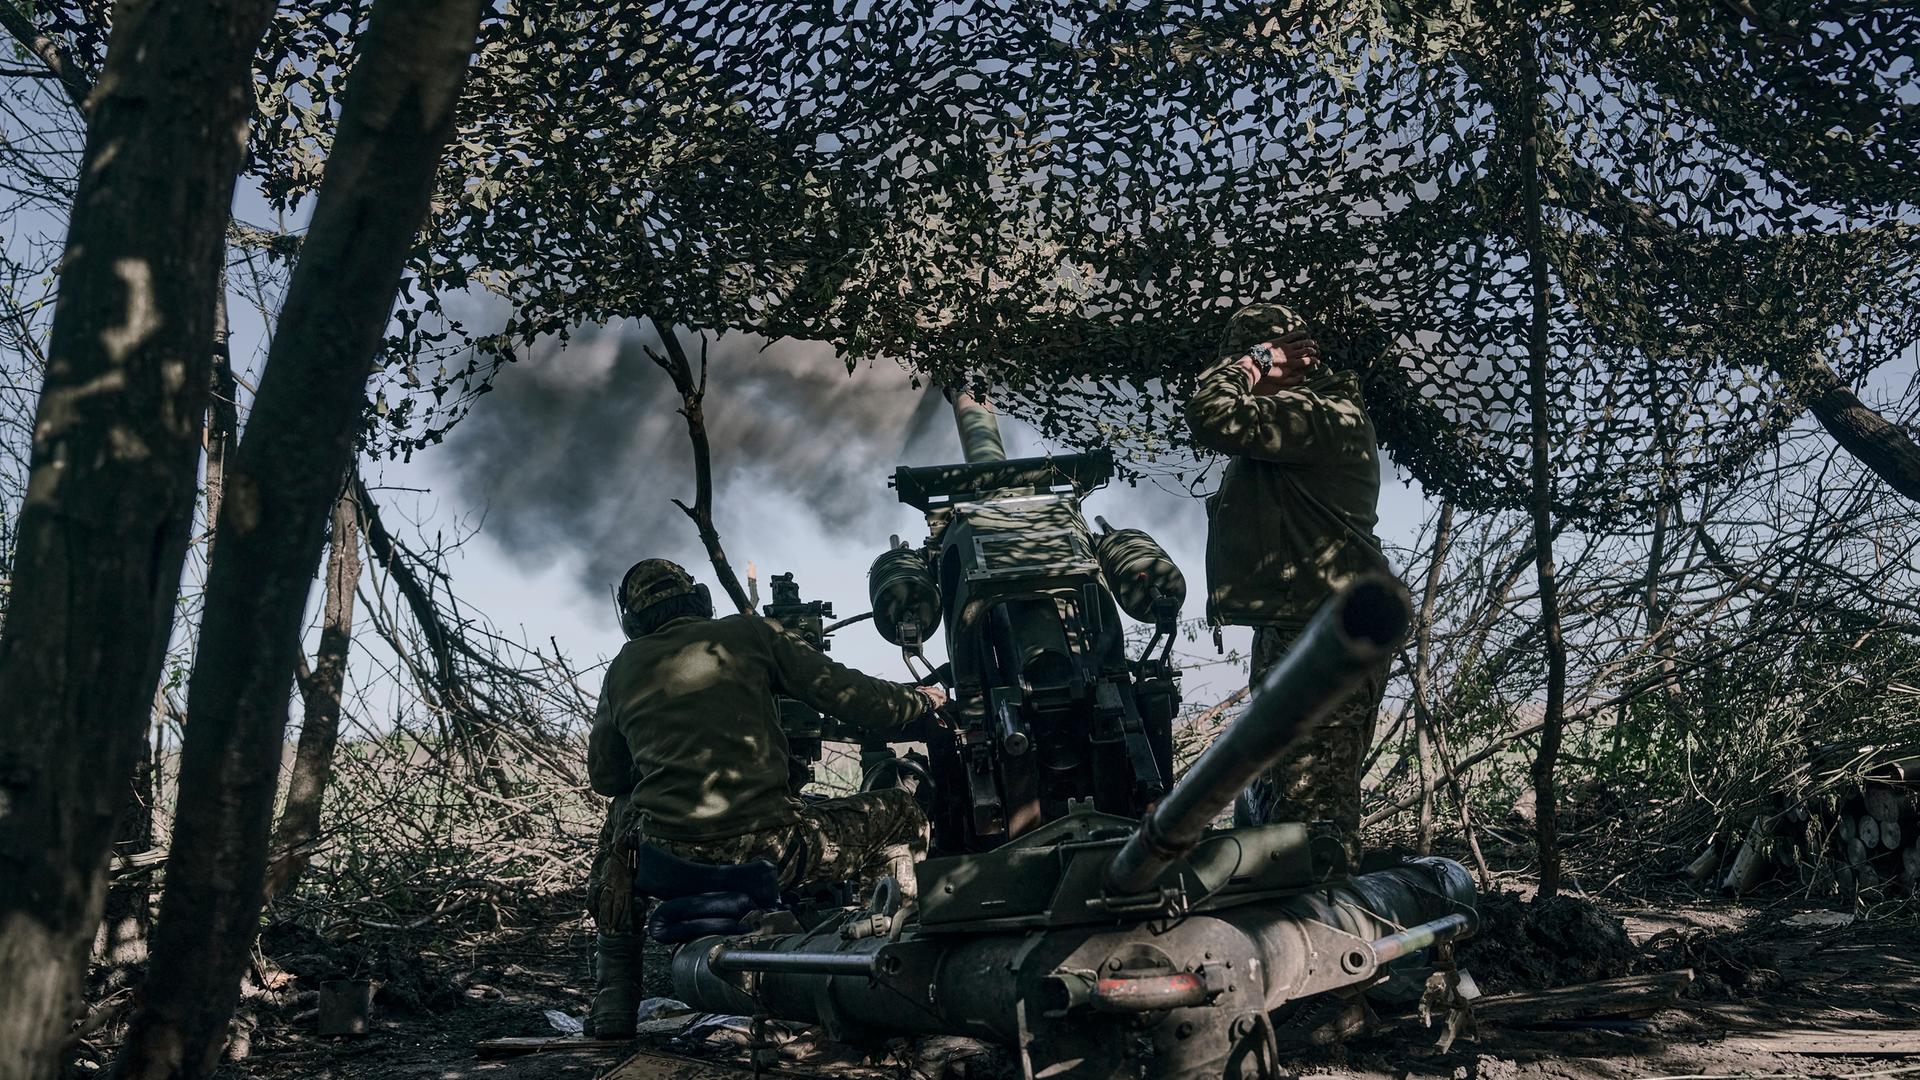 Krieg in der Ukraine - Moskau spricht von abgewehrter "Offensive" - russischer Kommandeur widerspricht